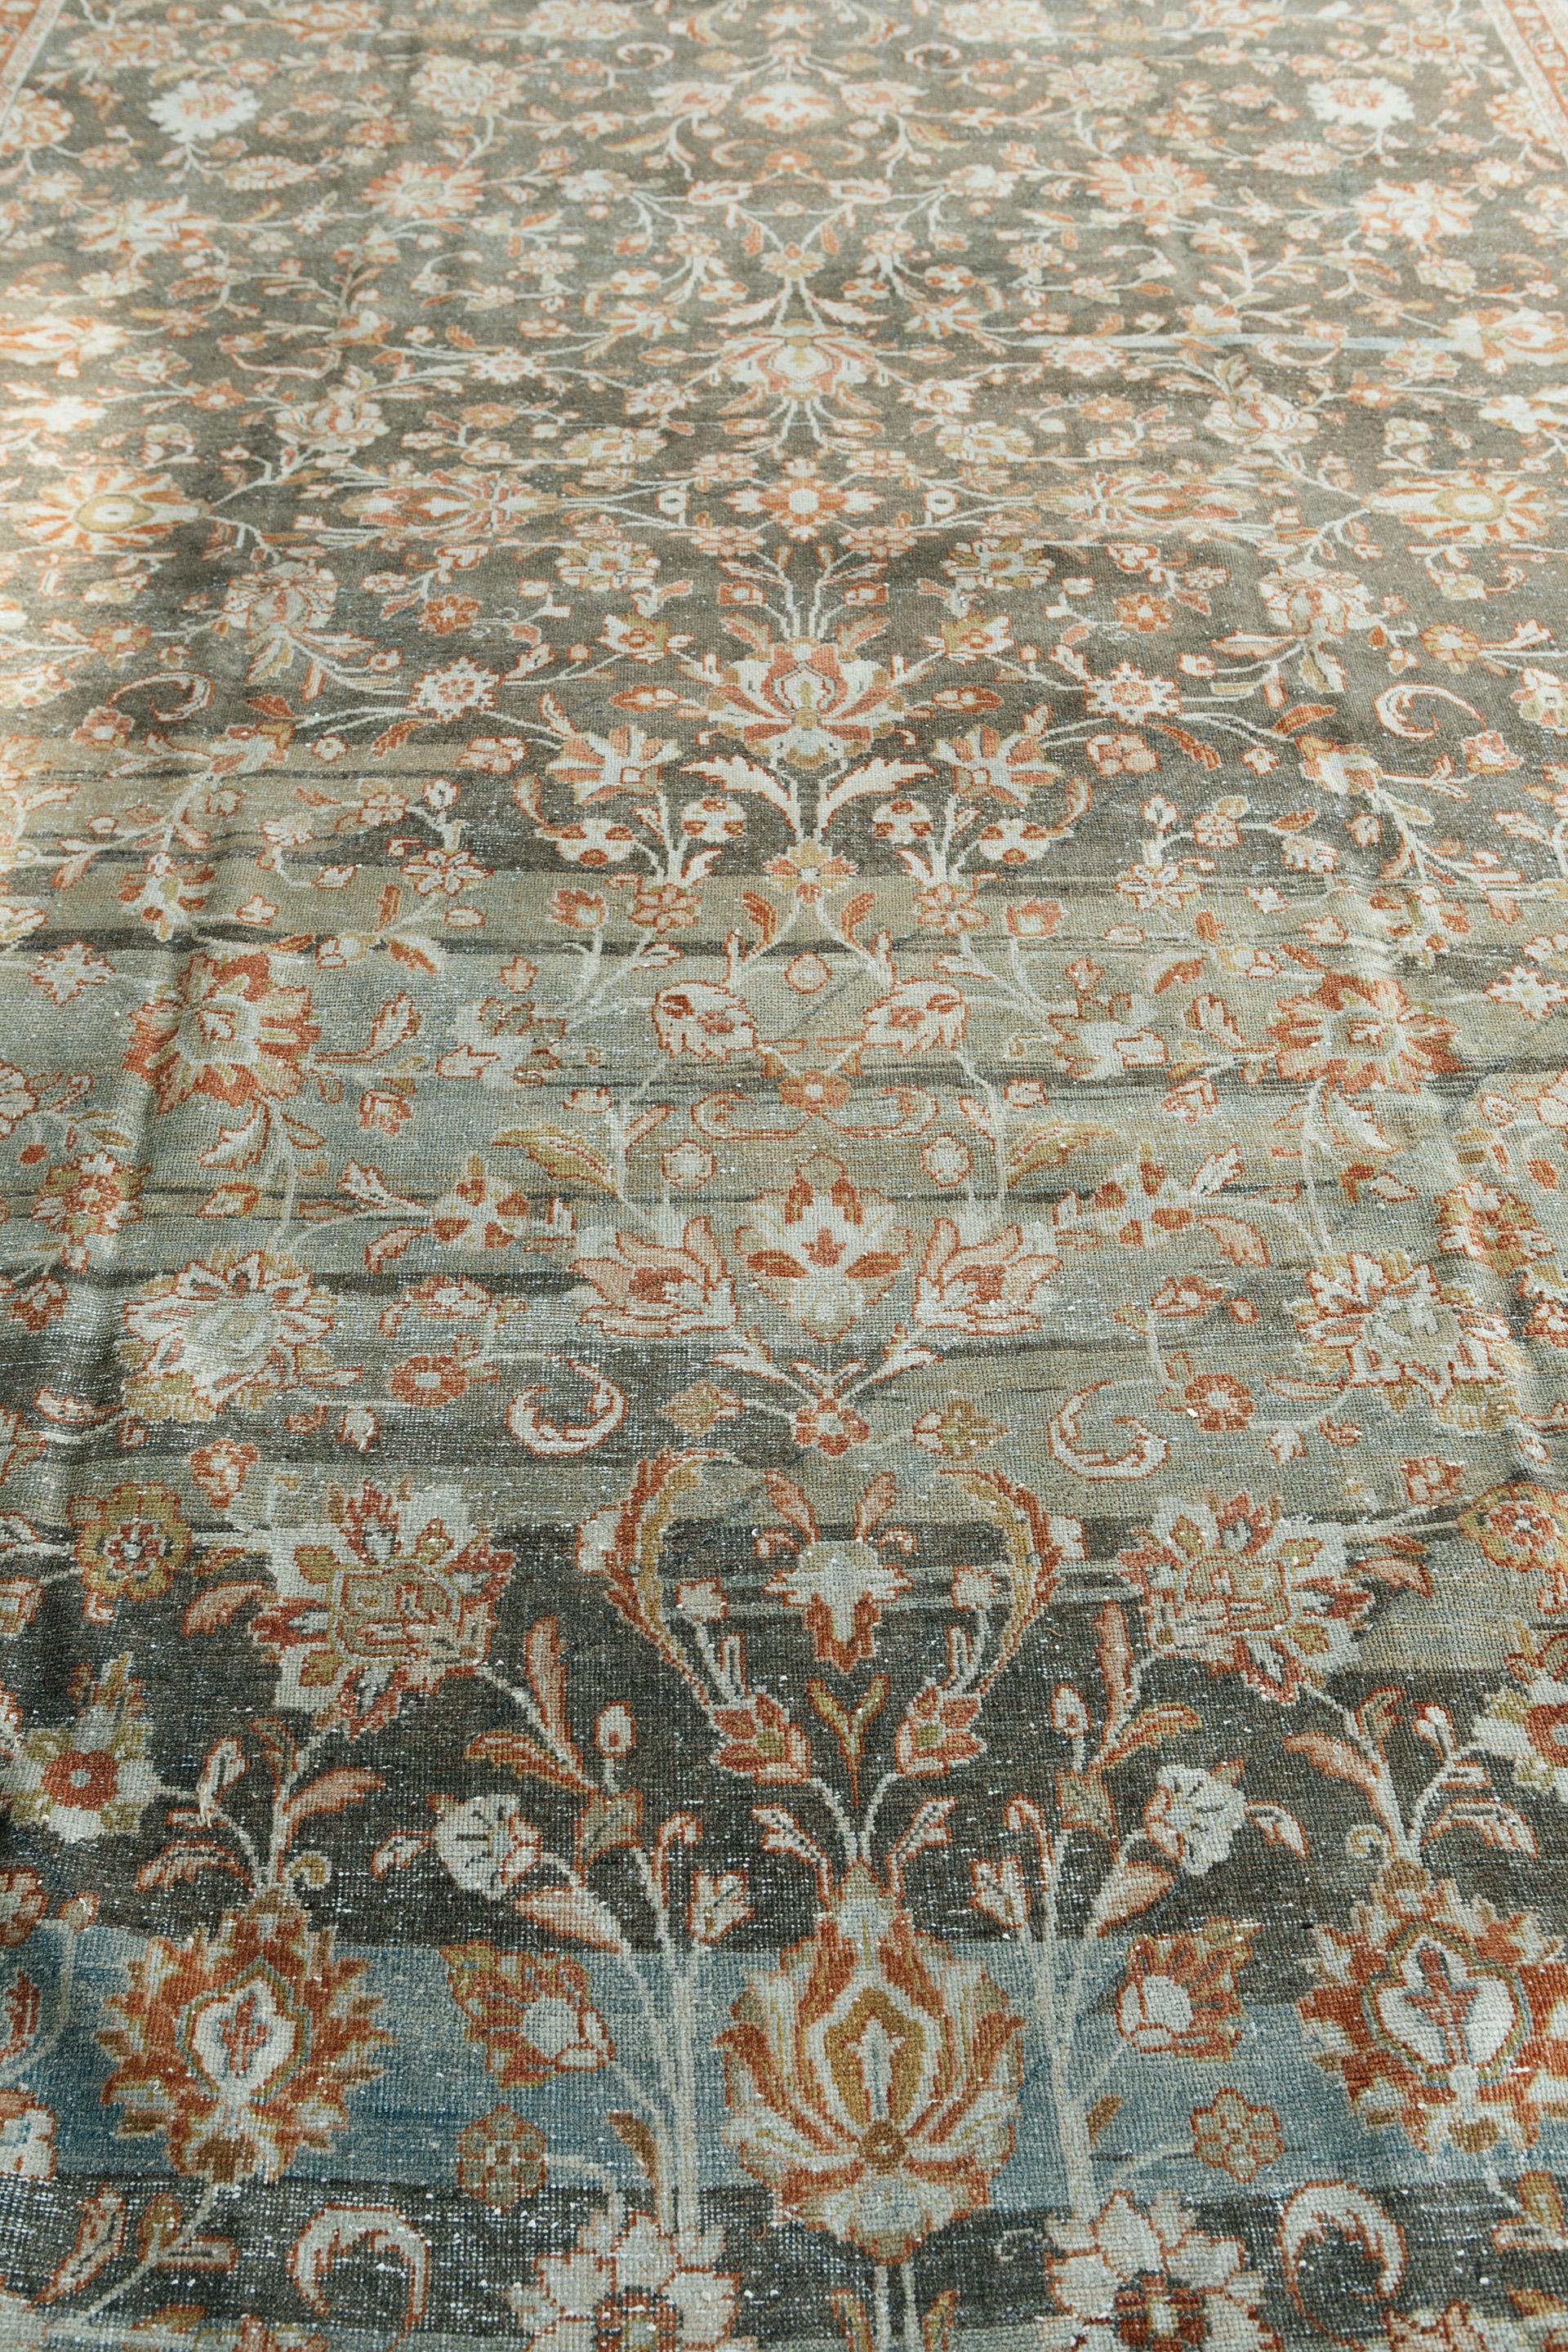 Exemplarische antike Mahal-Teppiche, wie dieser hier, werden von vielen wegen ihrer Originalität und inspirierten Kunstfertigkeit bevorzugt. Daher haben sich diese Teppiche aufgrund ihrer Kompatibilität und Vielseitigkeit mit den besten